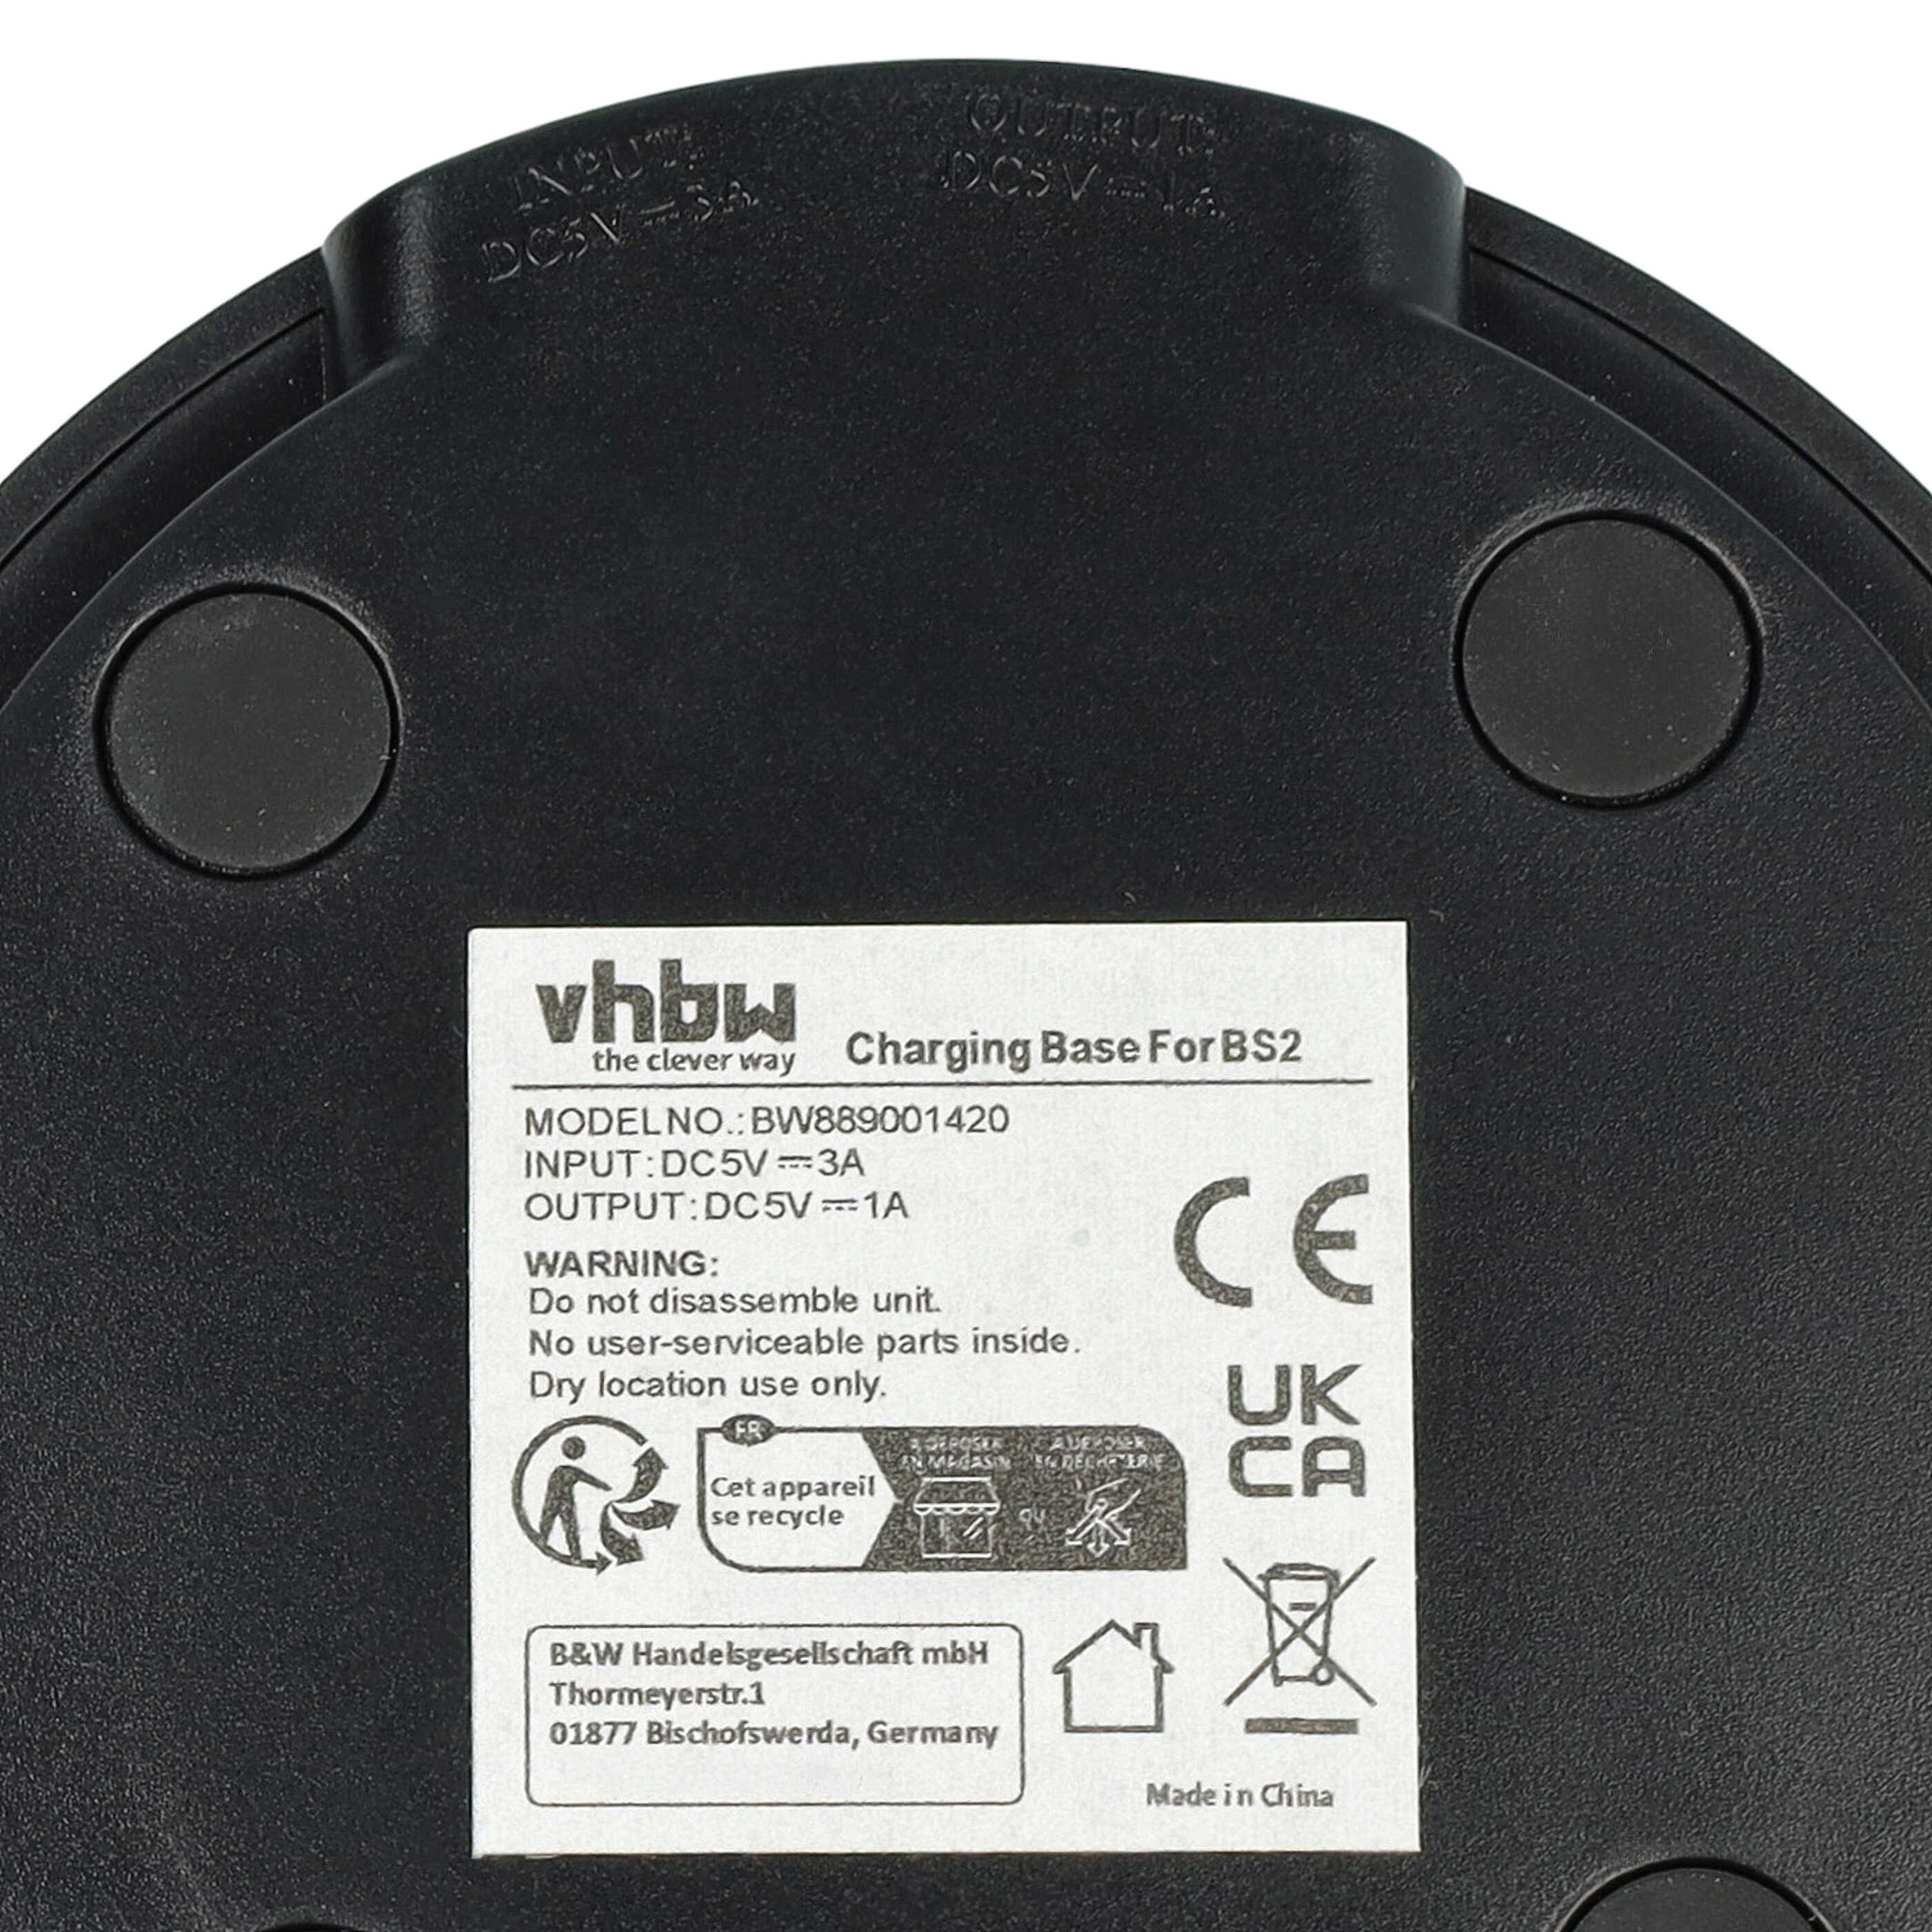 Estación carga + cable USB C para altavoces Bose Portable Home Speaker - 155 cm negro